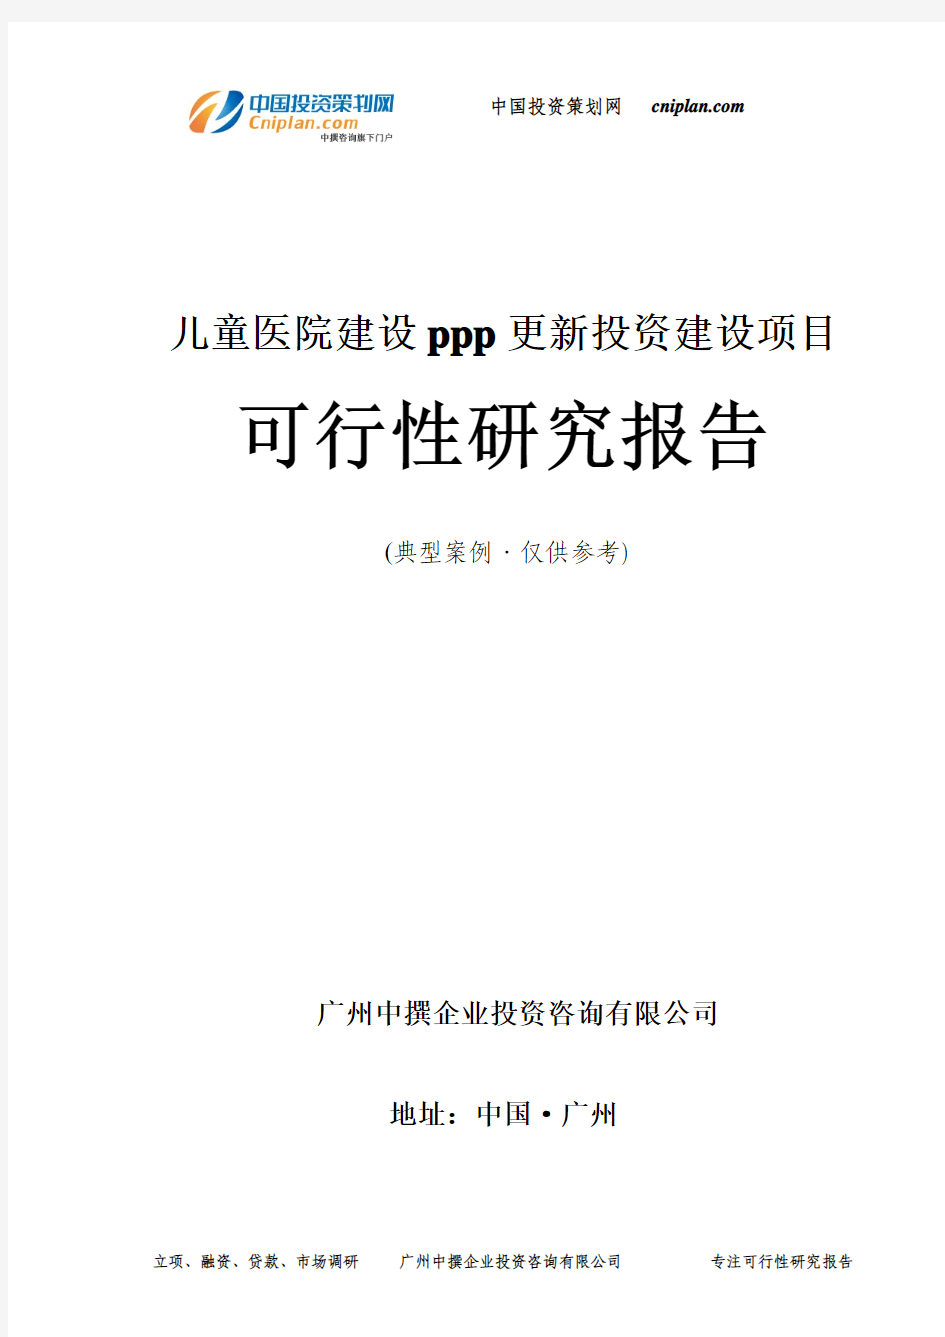 儿童医院建设ppp更新投资建设项目可行性研究报告-广州中撰咨询